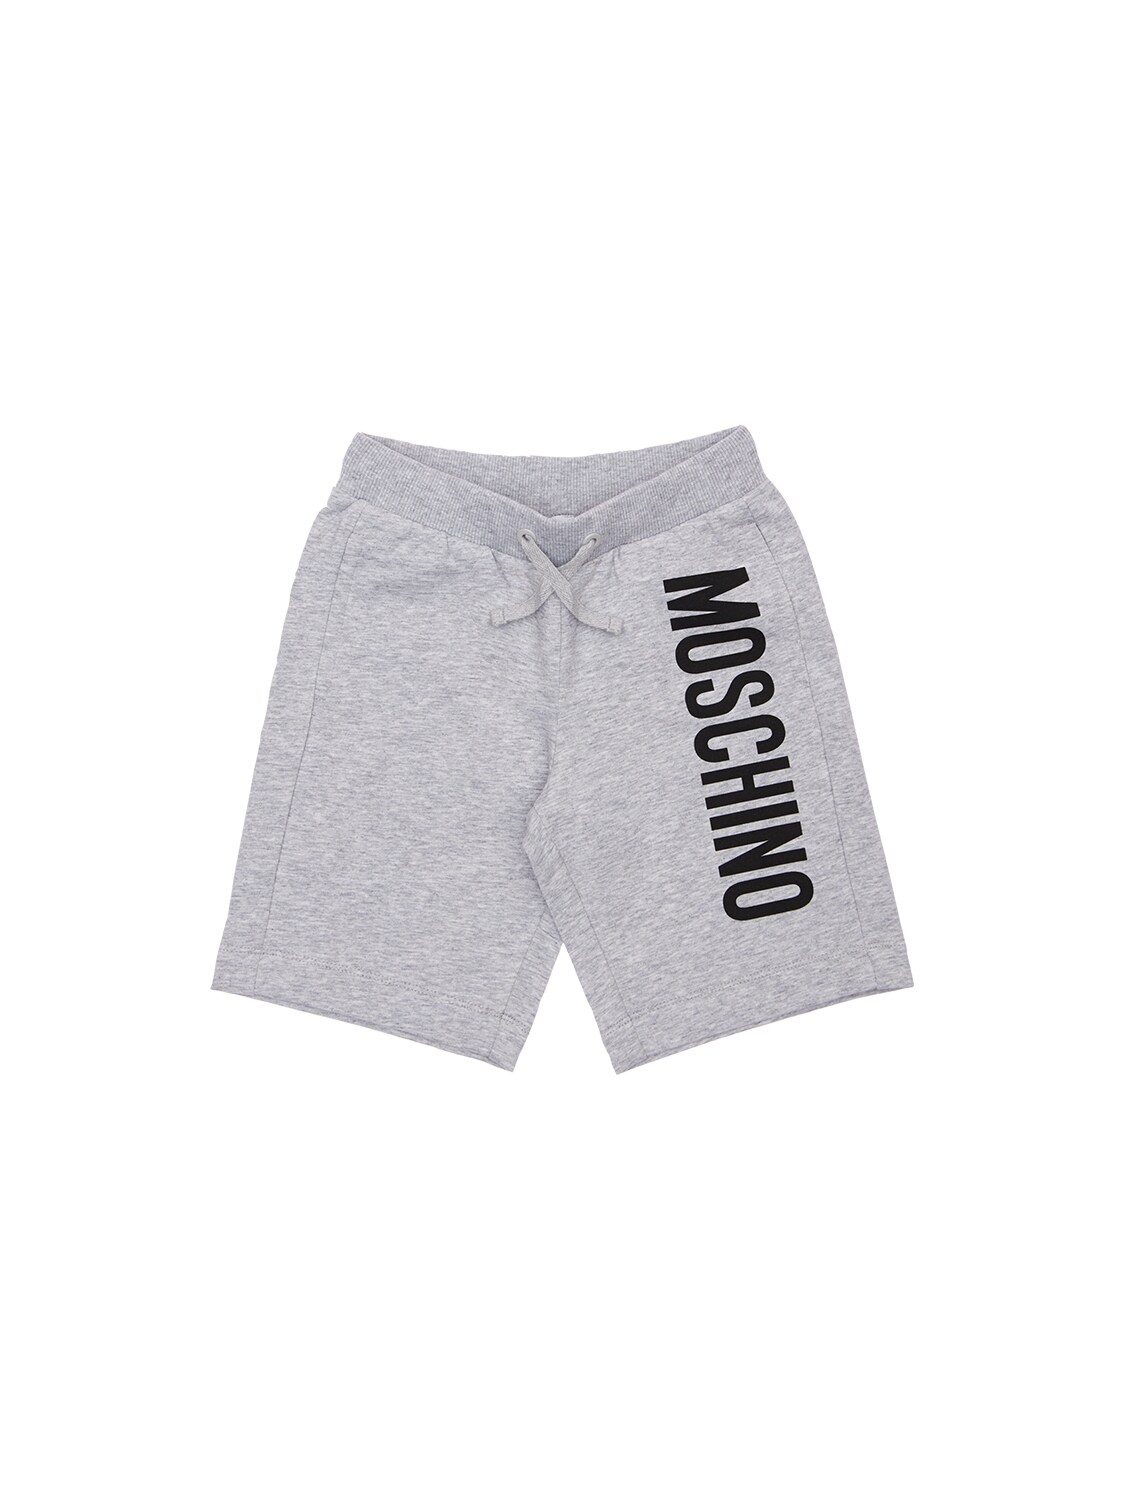 moschino logo shorts